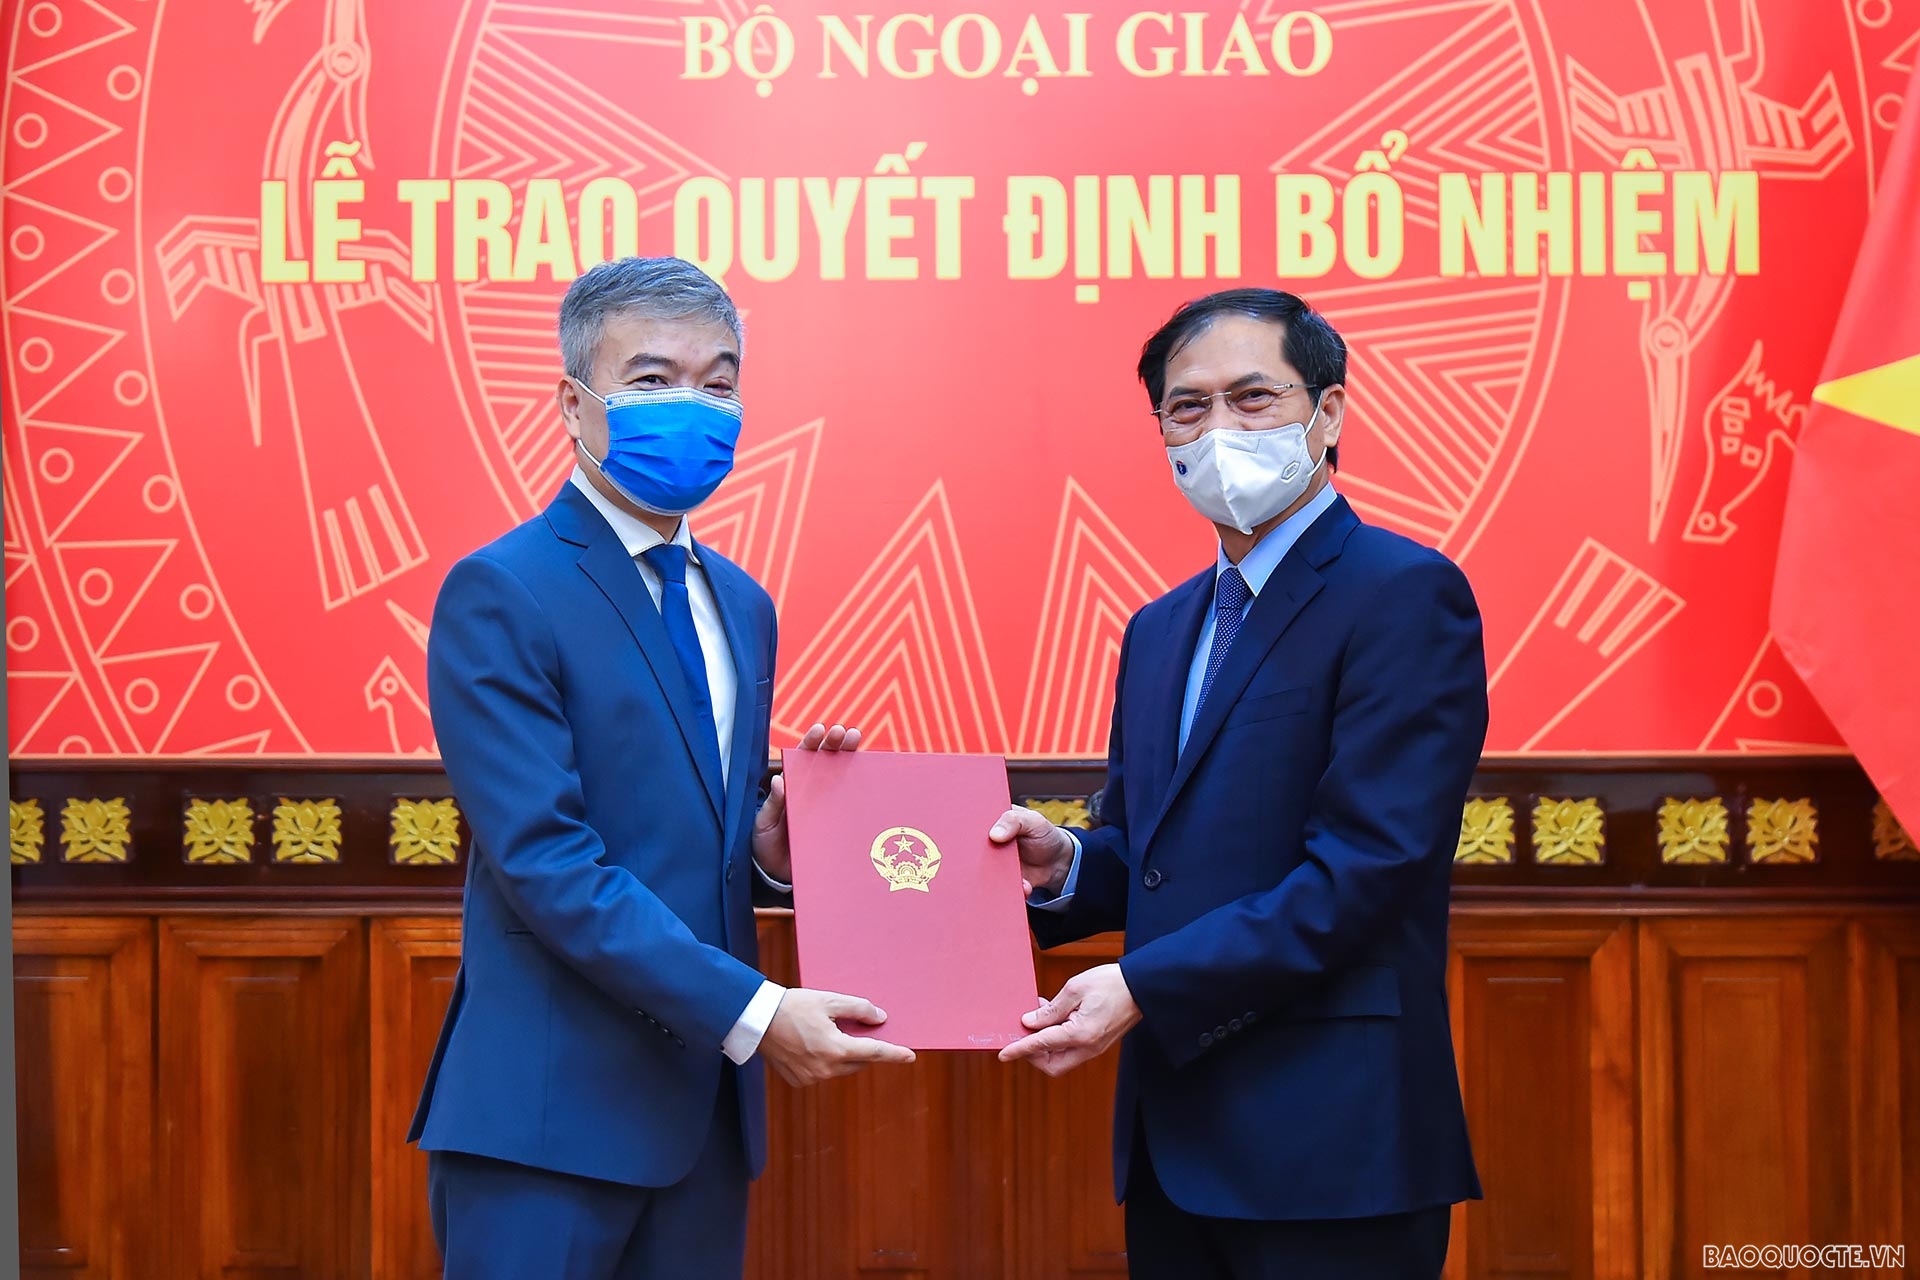 Ủy viên Trung ương Đảng, Bộ trưởng Ngoại giao Bùi Thanh Sơn trao quyết định bổ nhiệm ông Nguyễn Thanh Tùng, Quyền Cục trưởng Cục Cơ yếu, giữ chức Cục trưởng Cục Cơ yếu.